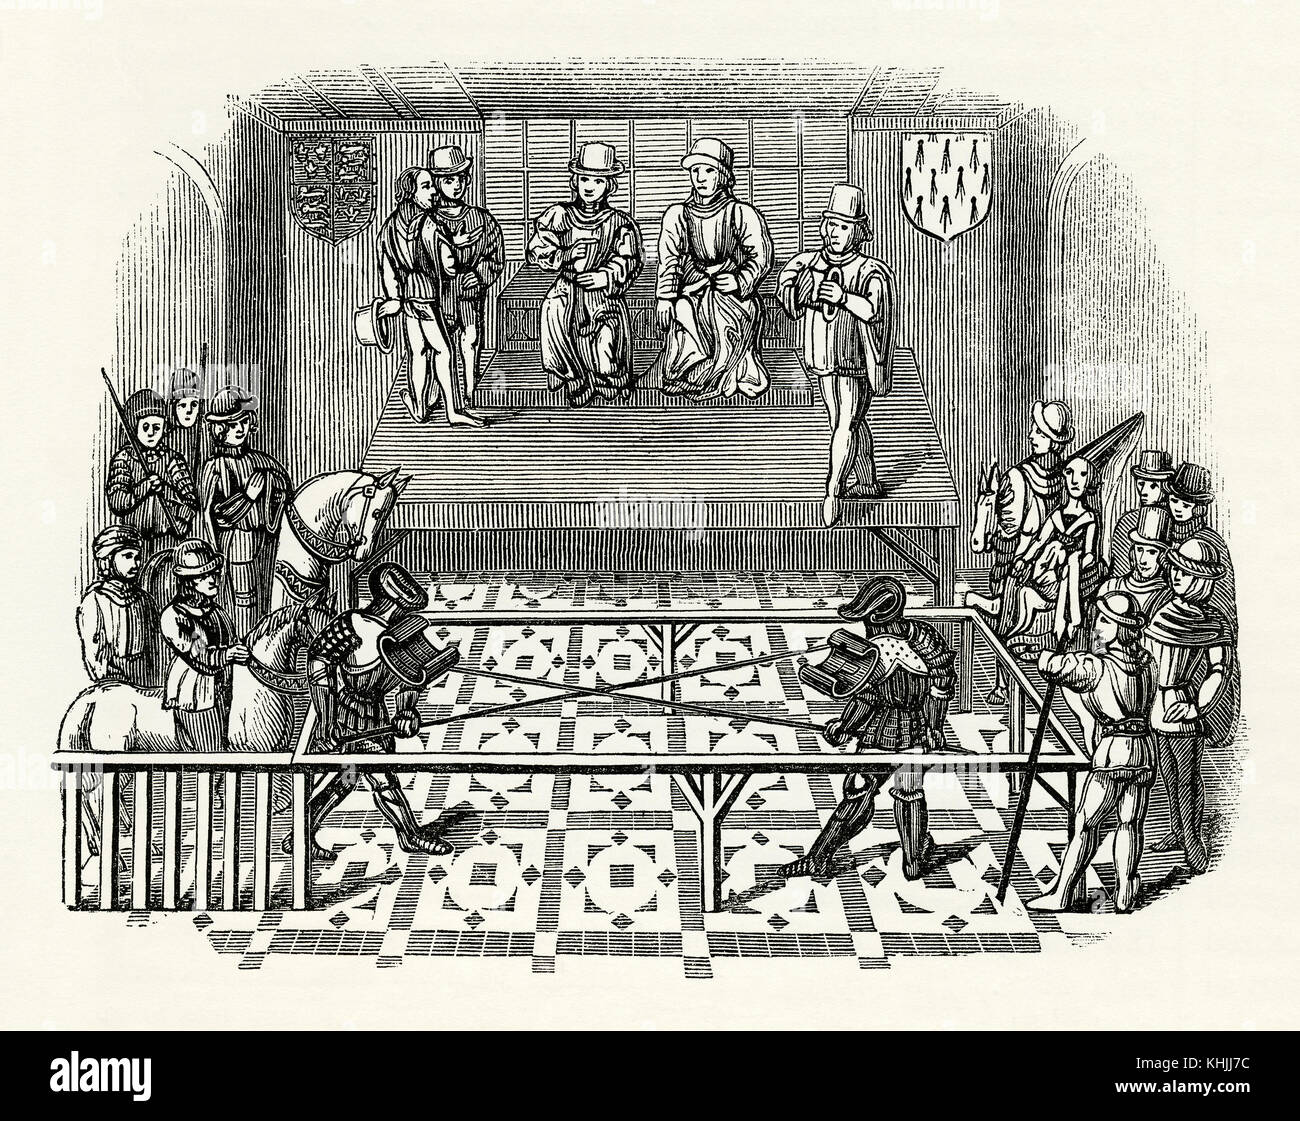 Une vieille gravure représentant deux chevaliers dans un concours d'inclinaison à l'époque médiévale. Jouting à cheval est tombé de la popularité au début du 16ème siècle. L'inclinaison a pris la forme de monter à plein galop et d'insérer une lance à travers de petits anneaux métalliques. Le terme « inclinaison » (et aussi le terme « joute ») est également utilisé pour les concours entre deux hommes avec des lances qui se sont battus à pied comme illustré ici. Banque D'Images